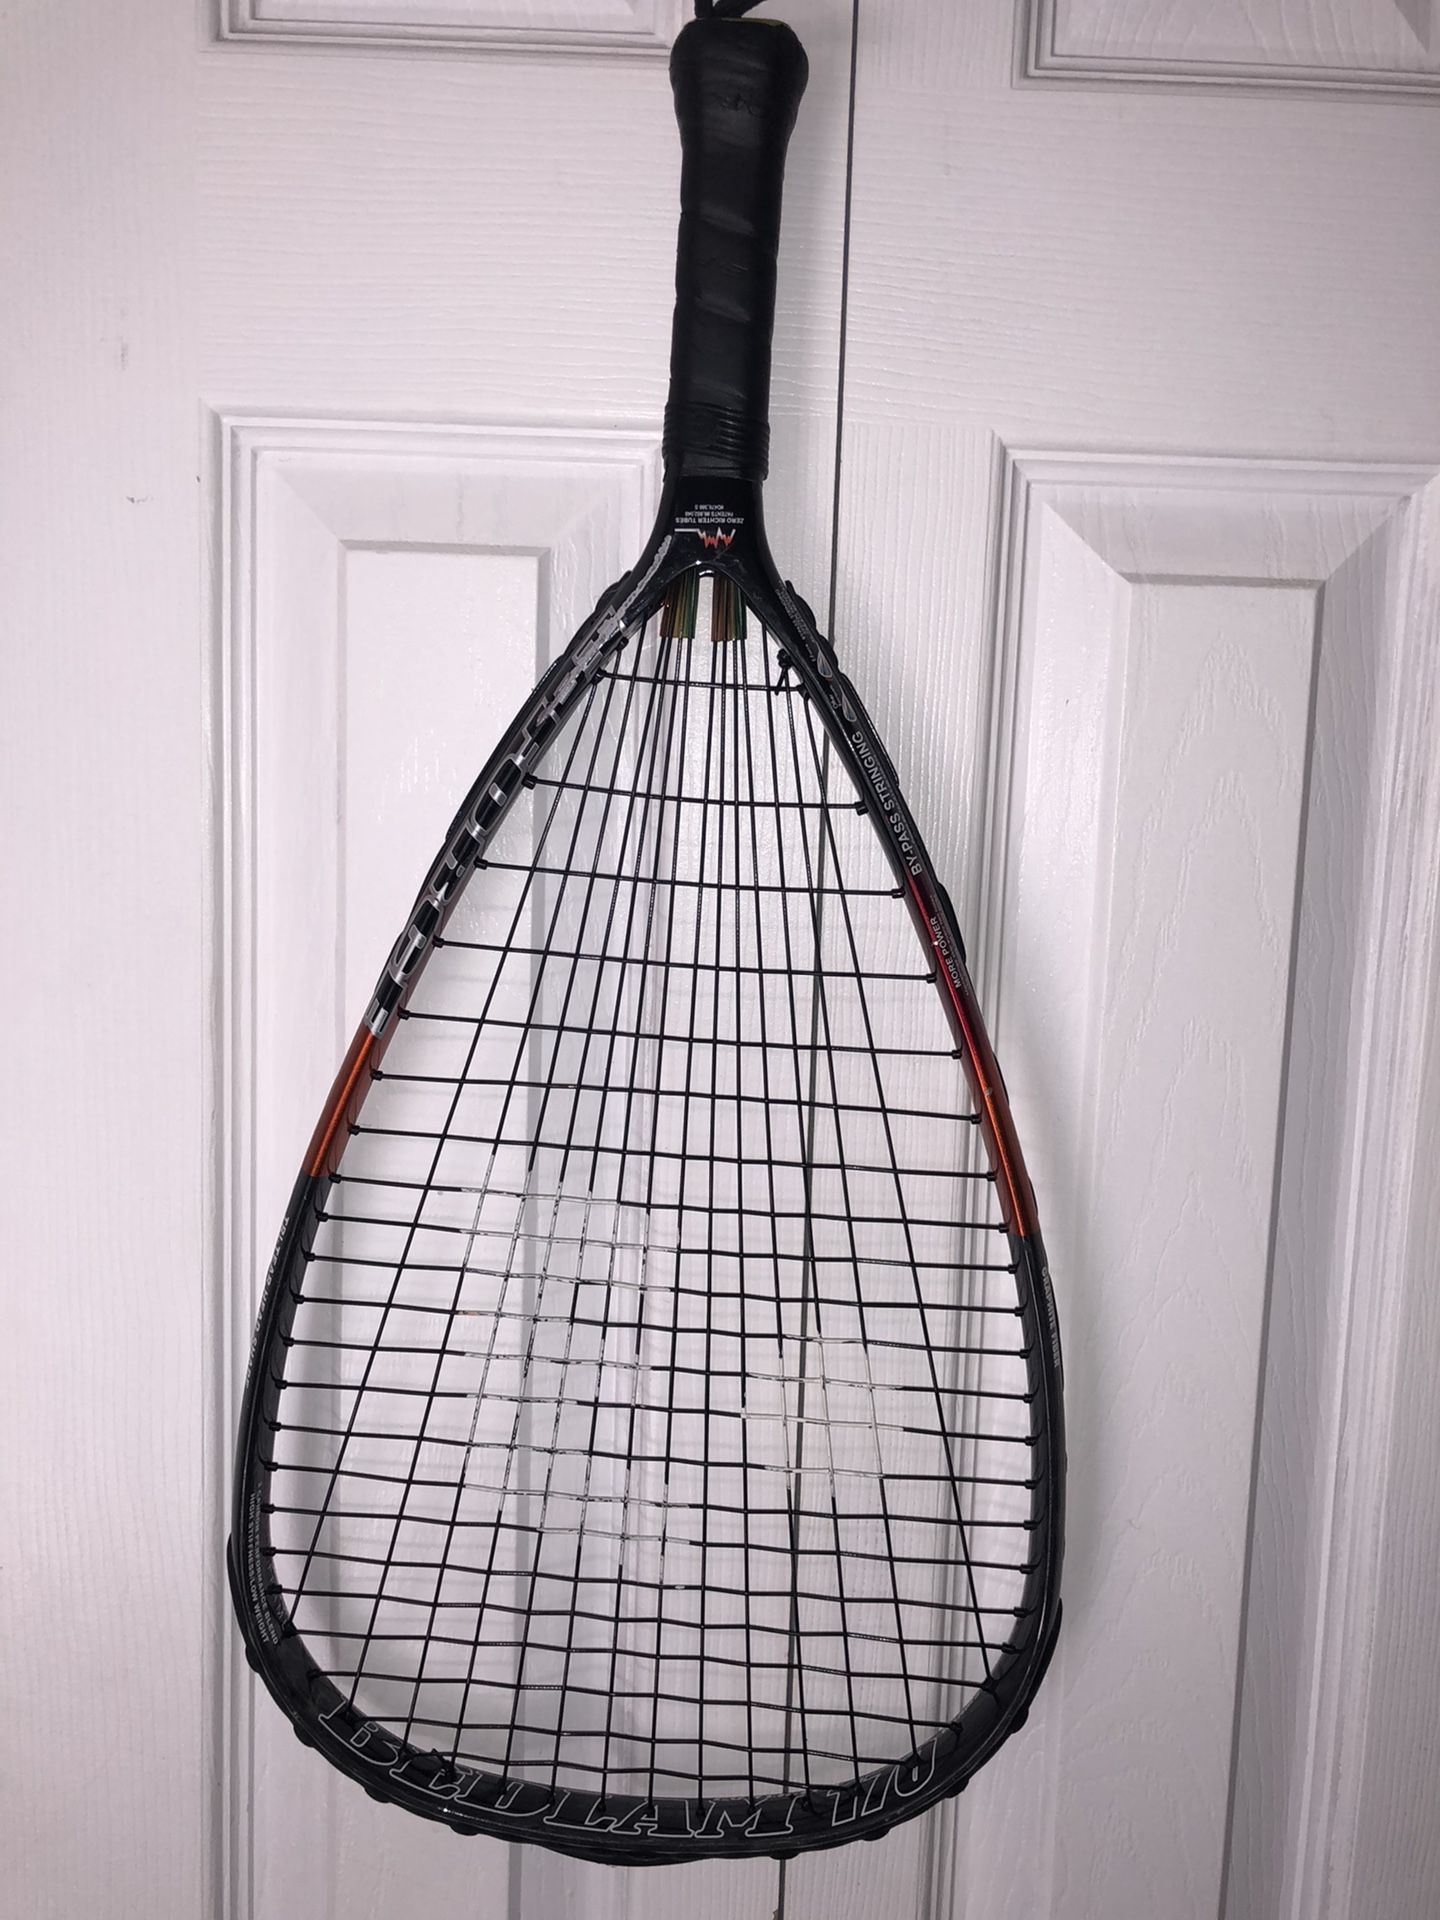 E-Force Bedlam 170 Racquetball Racquet